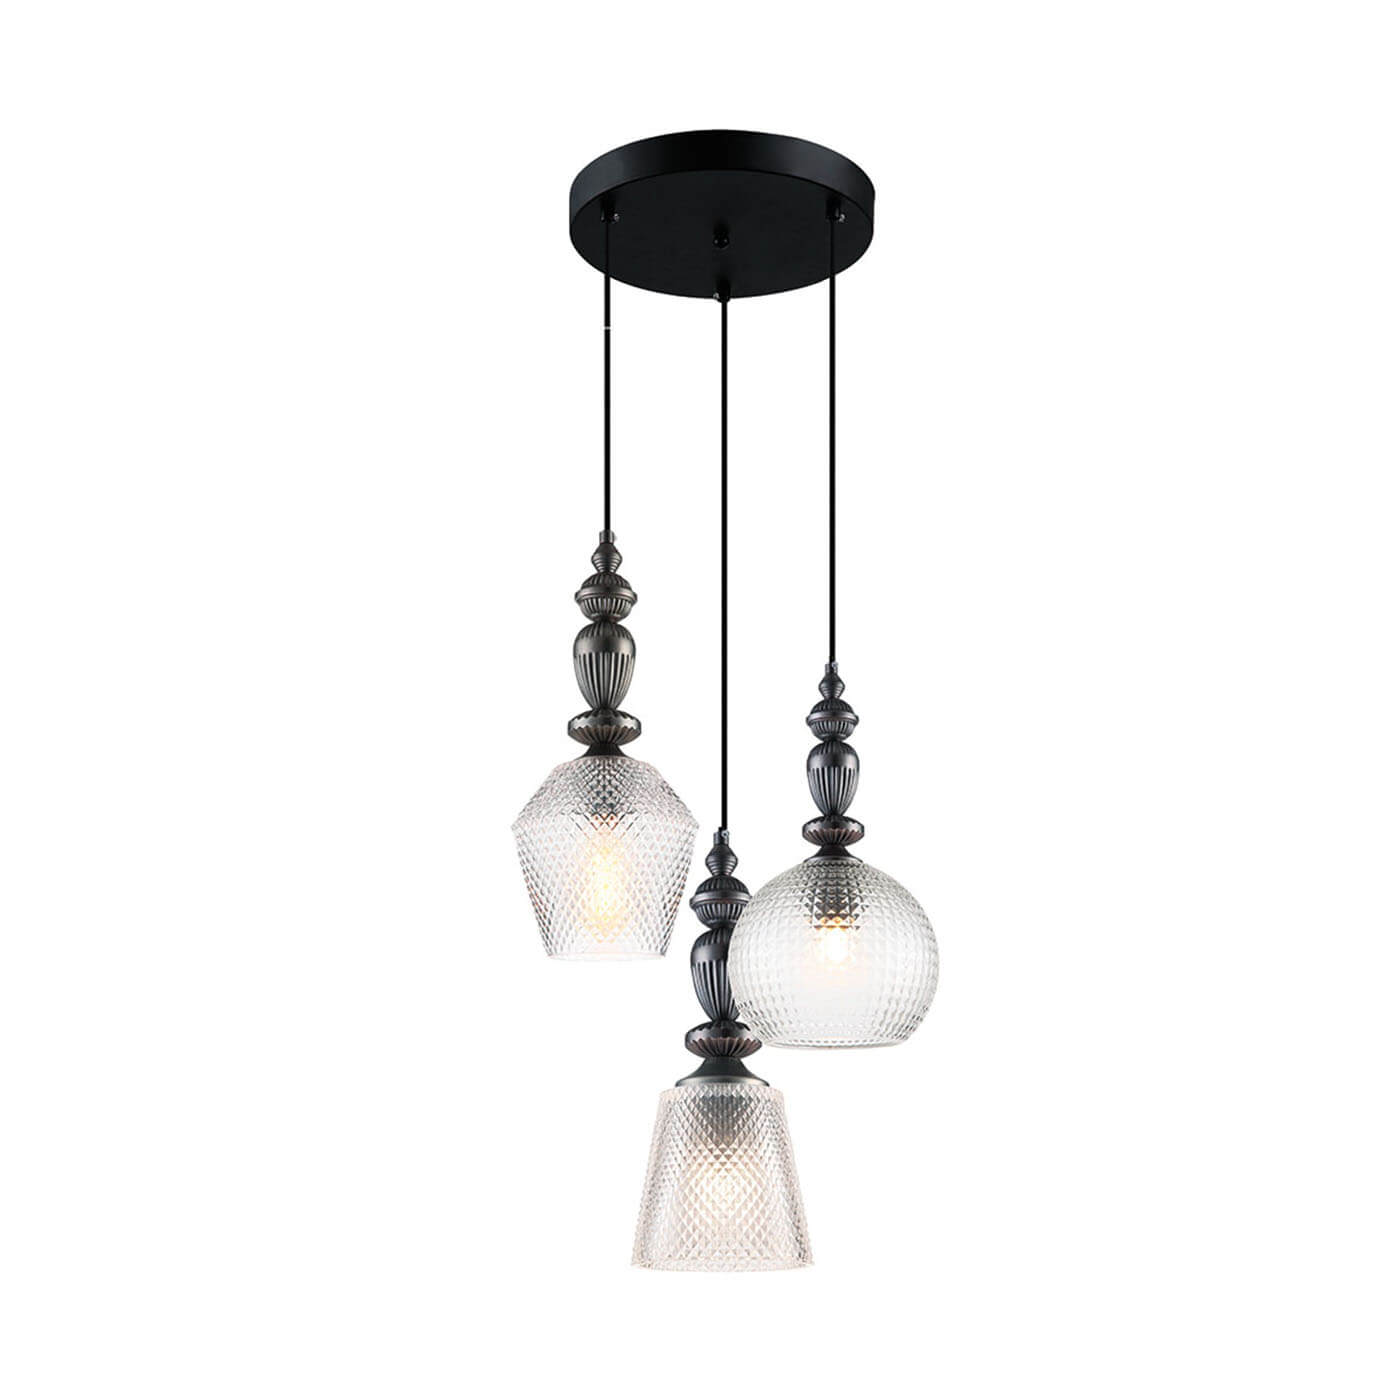 Cauti o lampa suspendata transparent TALISA S3 din sticla, design modern, elegant, pentru living, dining sau dormitor din colectia de lustre si candelabre Domicilio?